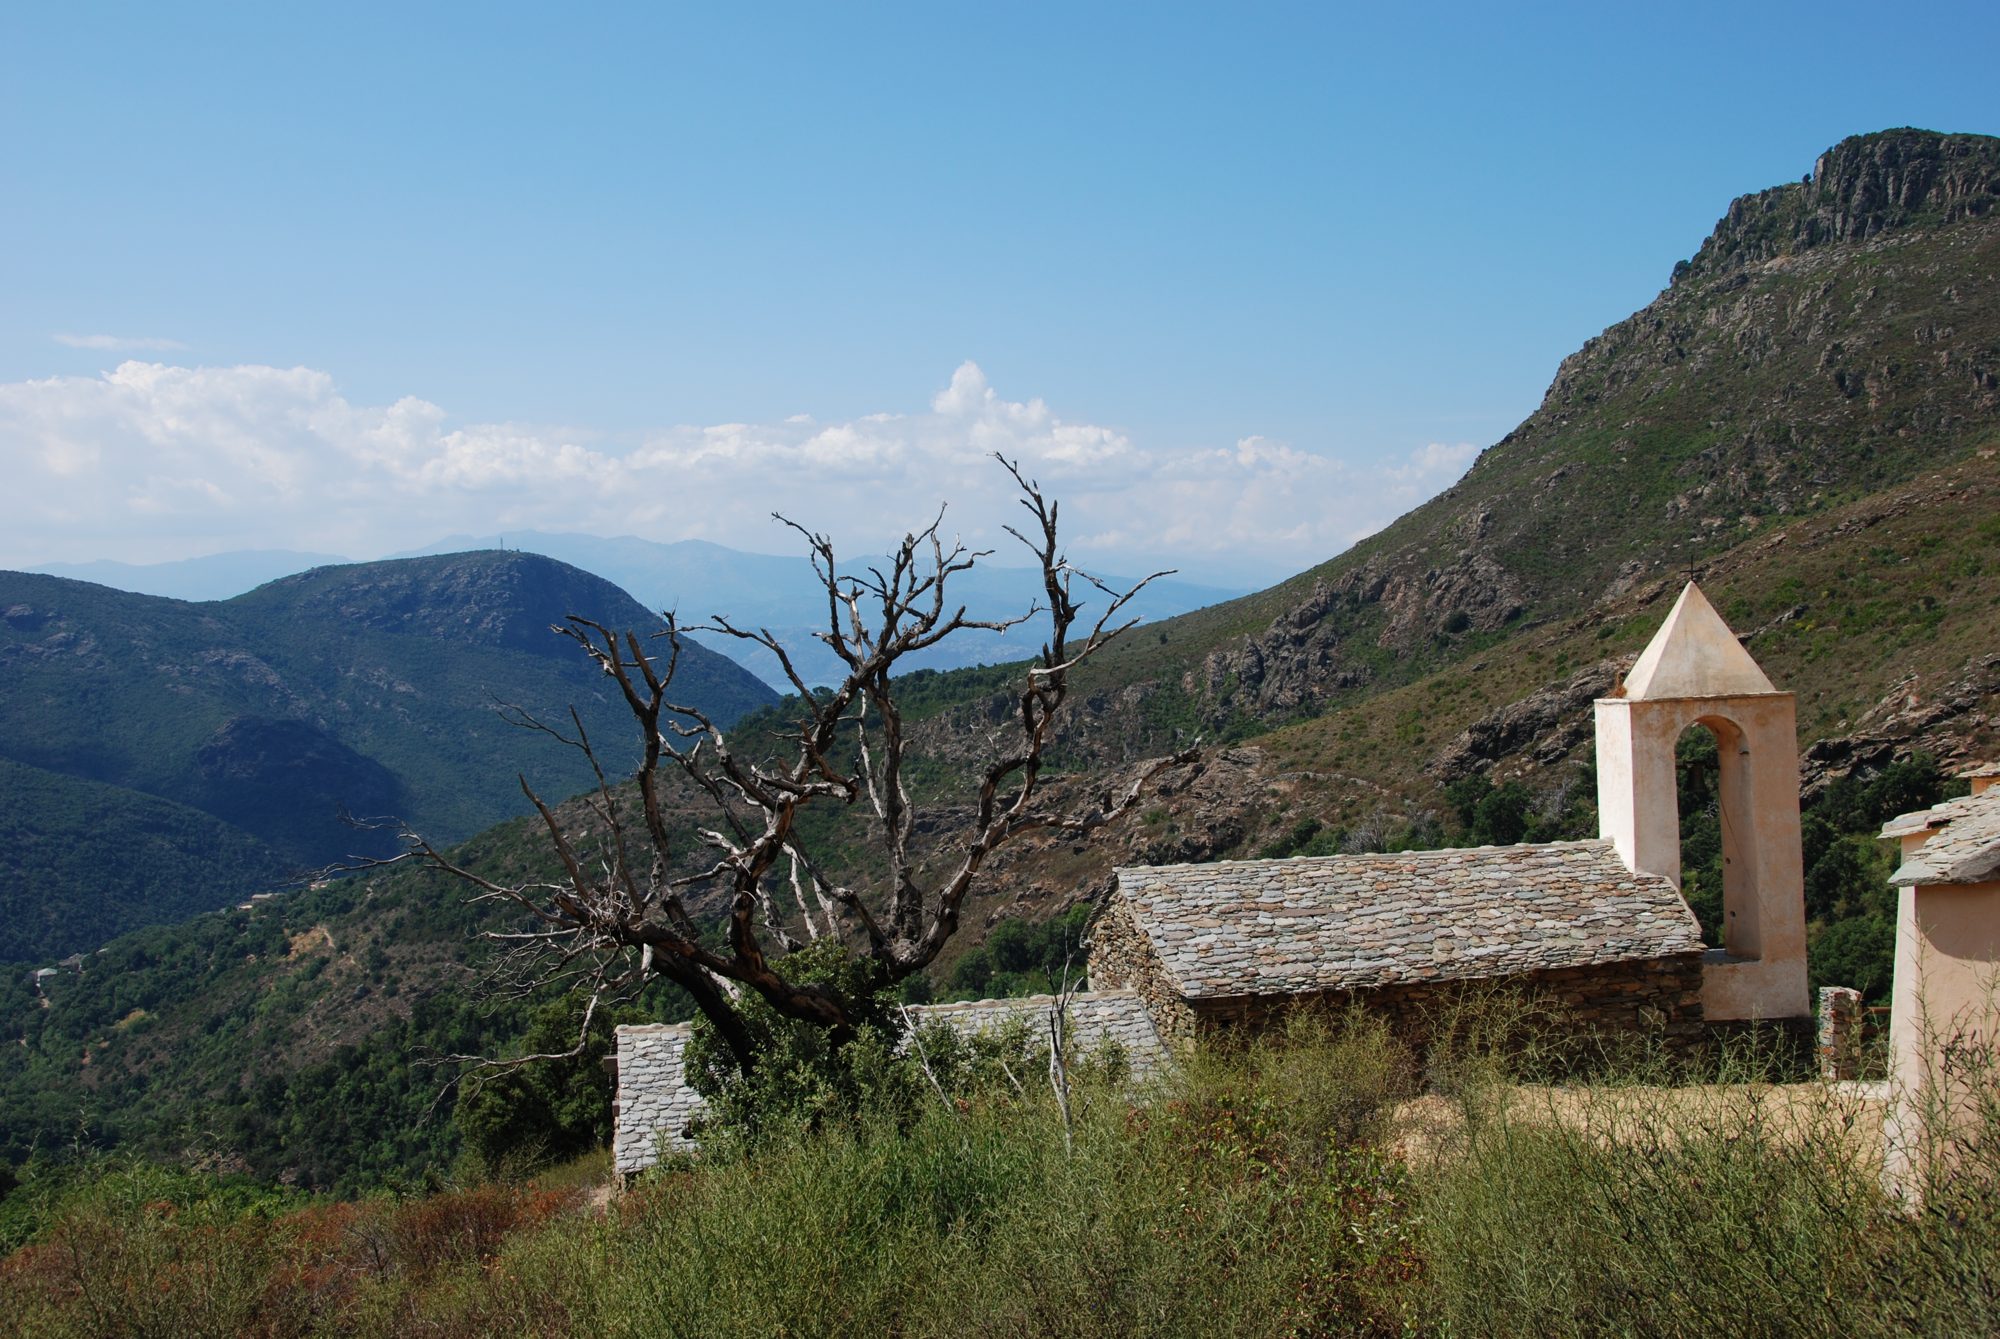 Wanderung am Cap Corse in Richtung Monte Stello